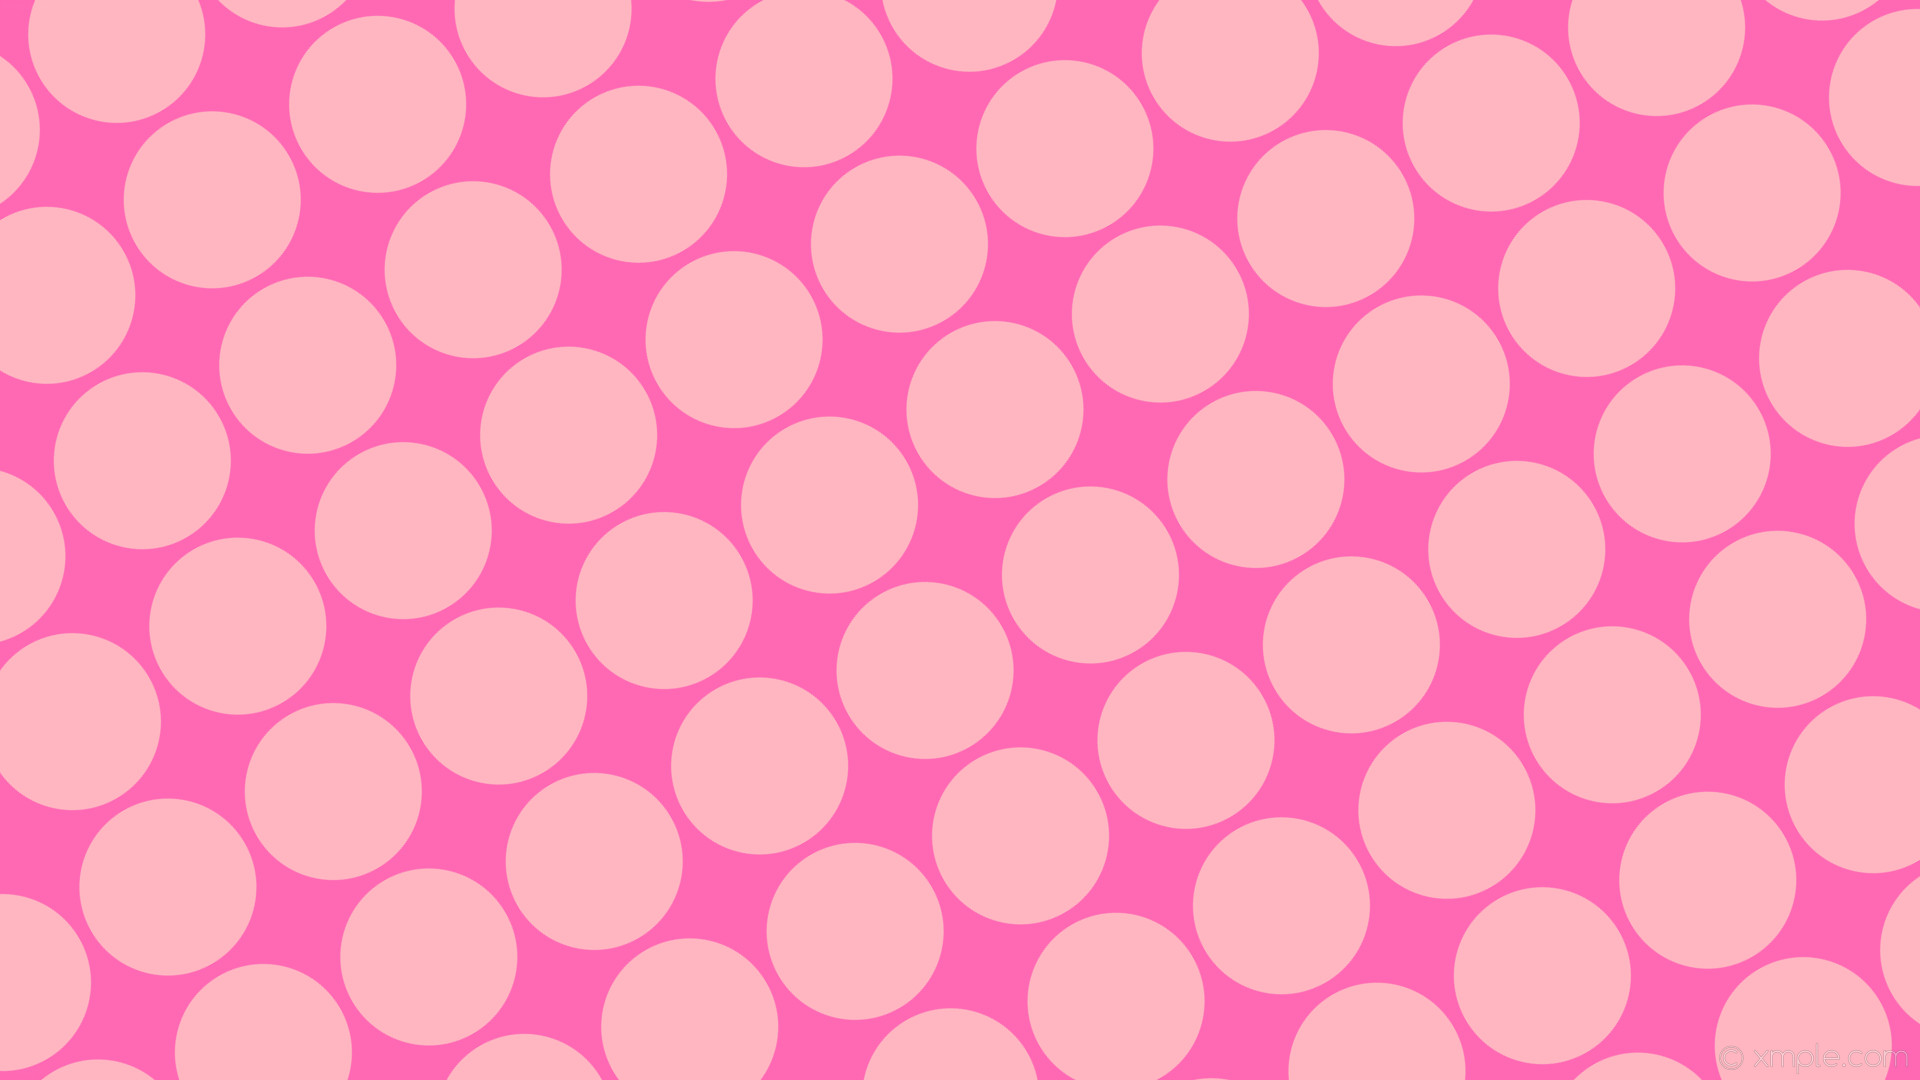 1920x1080 wallpaper pink spots polka dots hot pink light pink #ff69b4 #ffb6c1 210Â°  177px